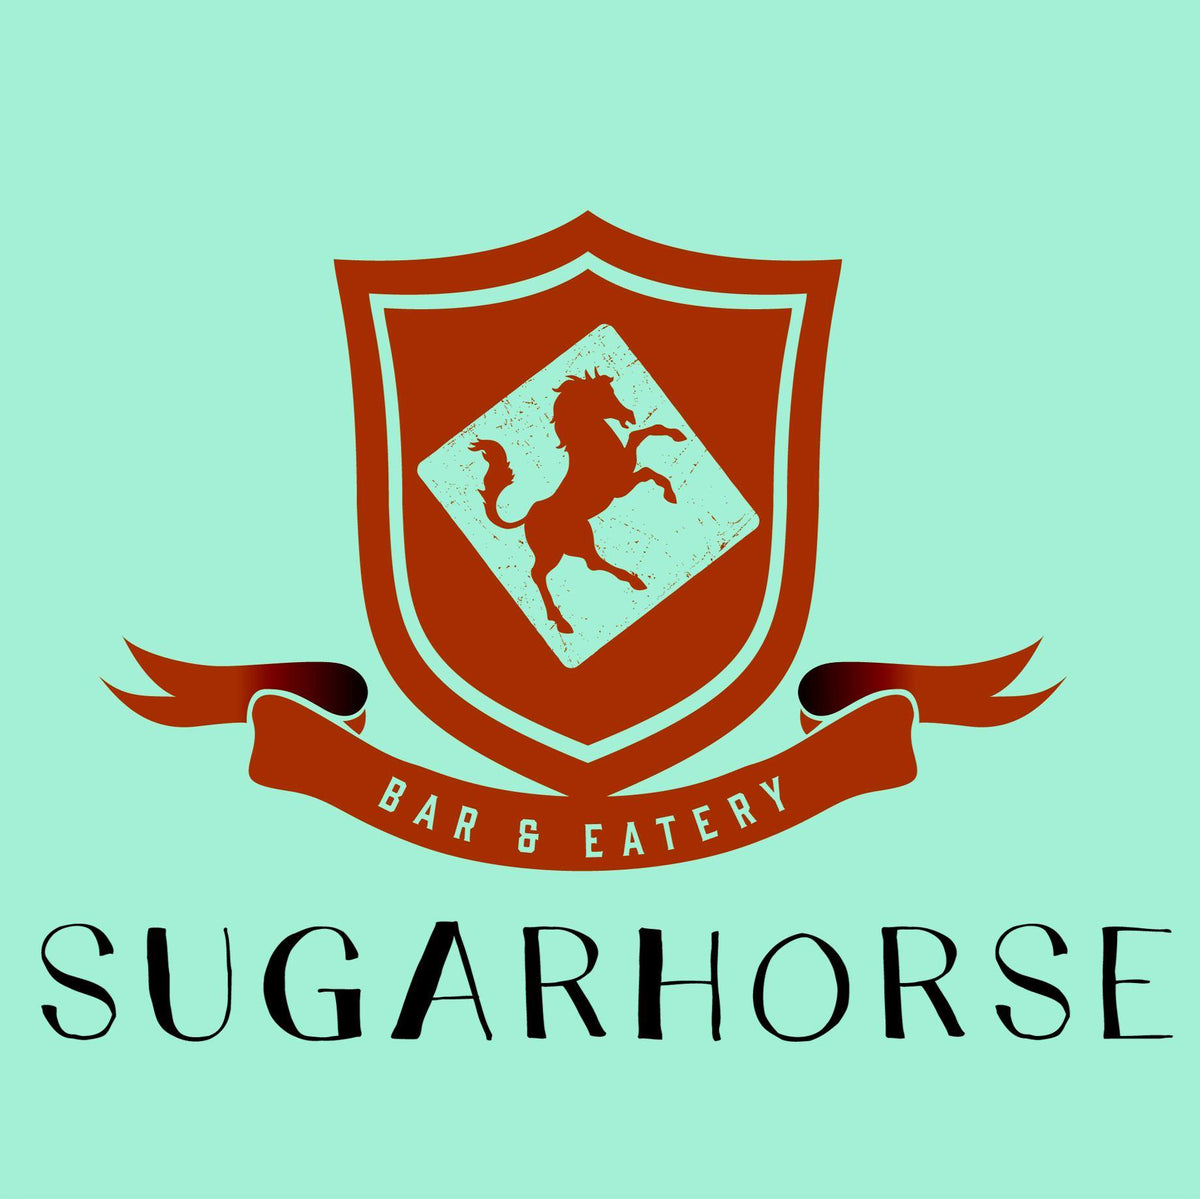 ”Sugarhorse